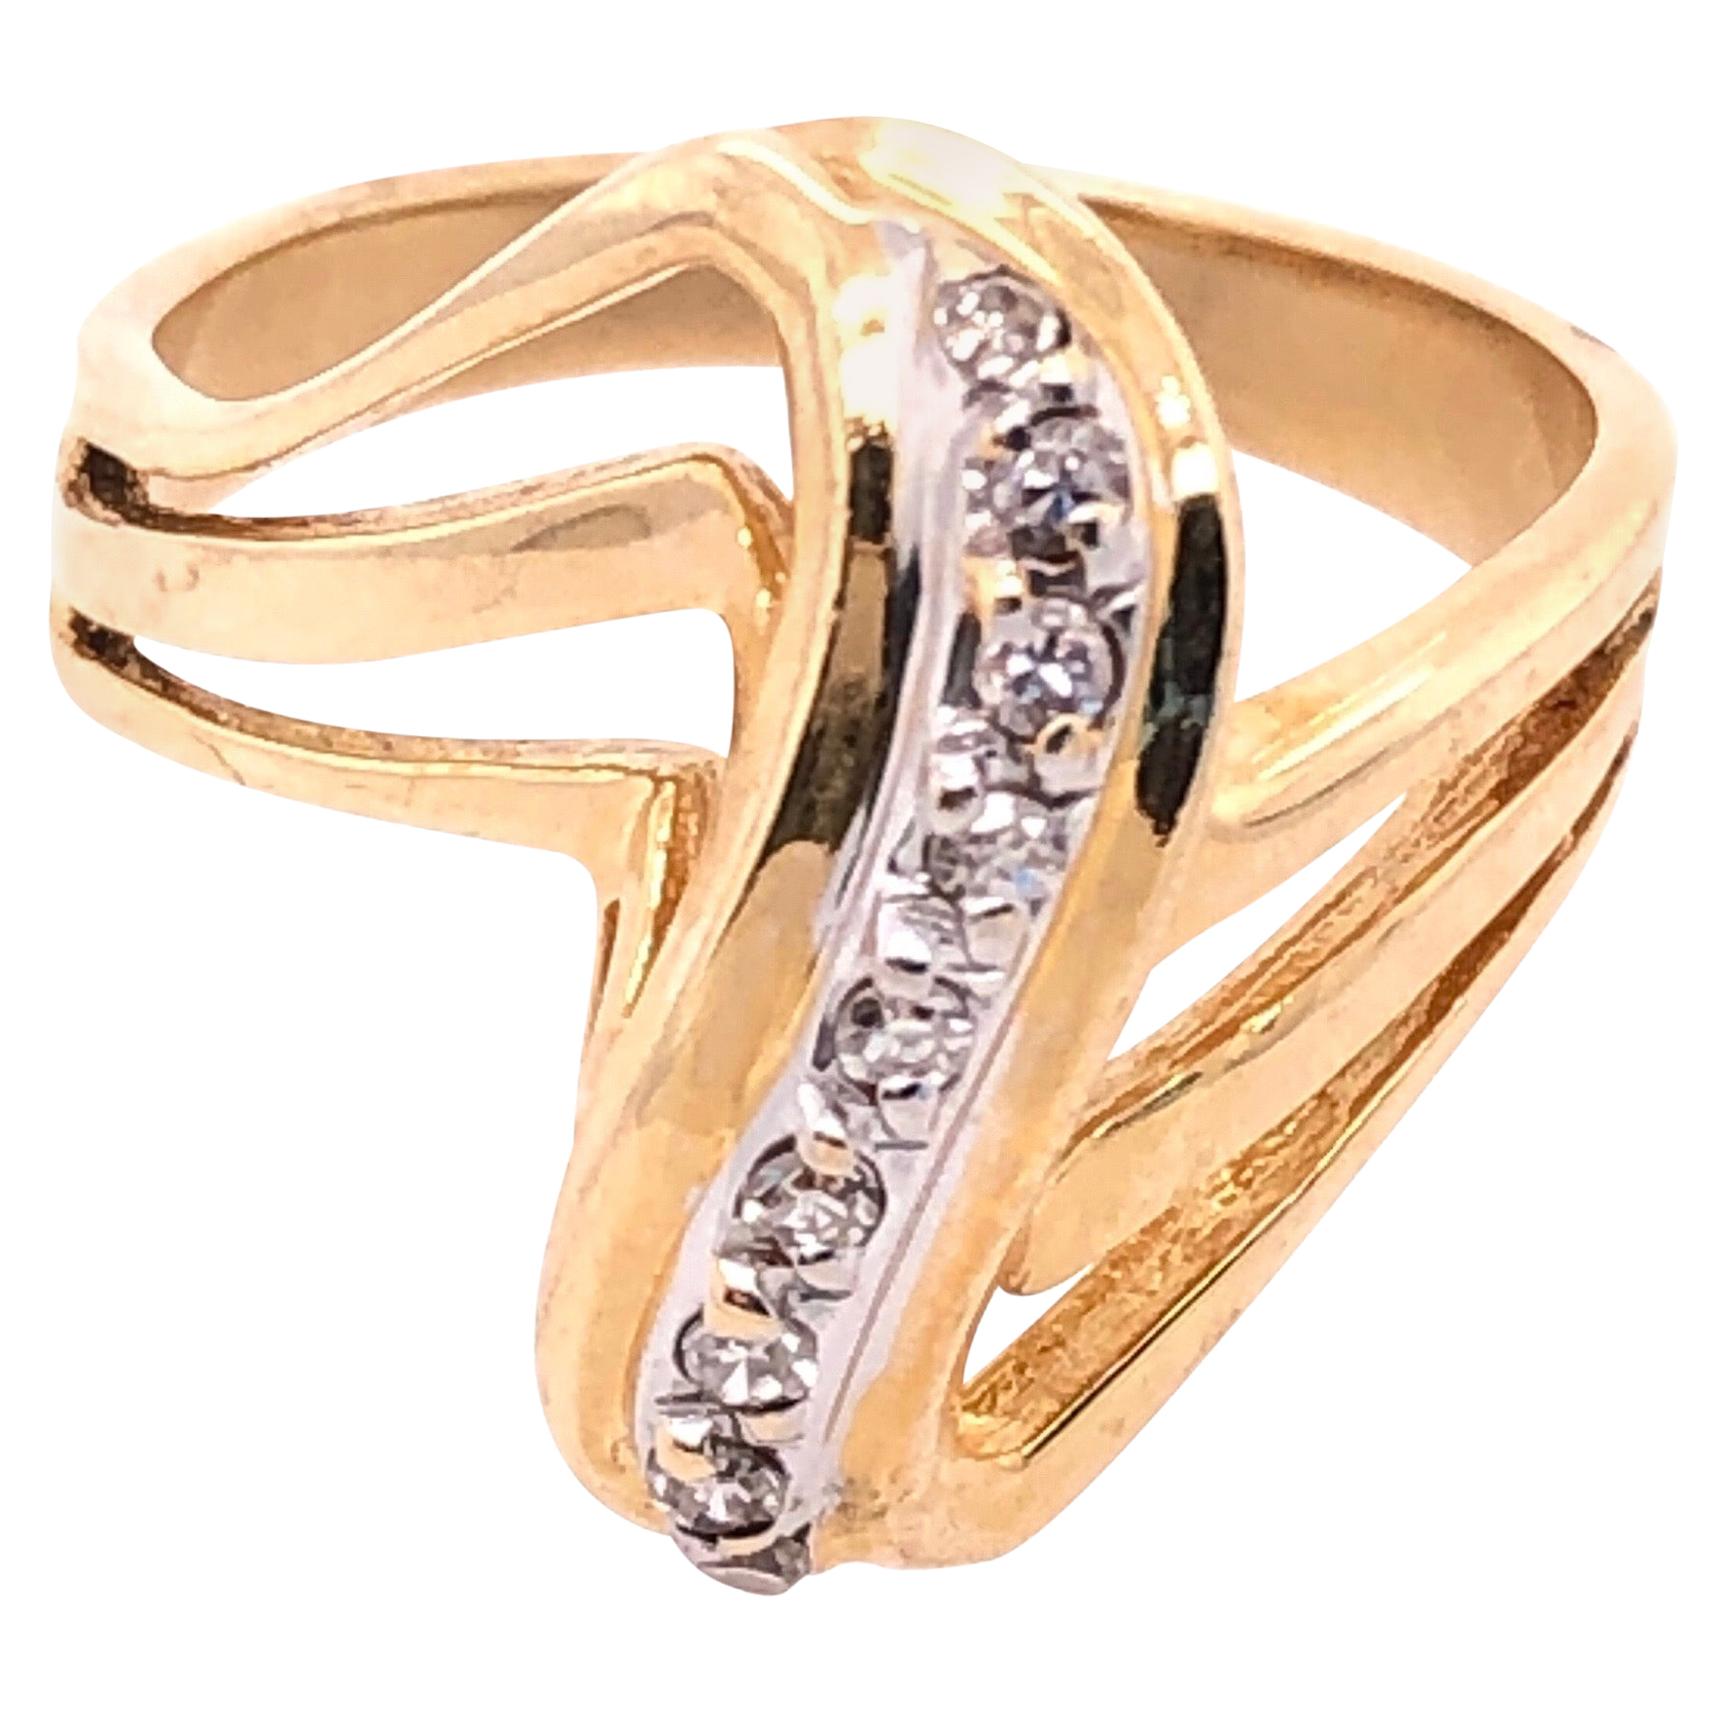 Zeitgenössischer Ring aus 14 Karat Weiß- und Gelbgold mit Diamanten in Freiform